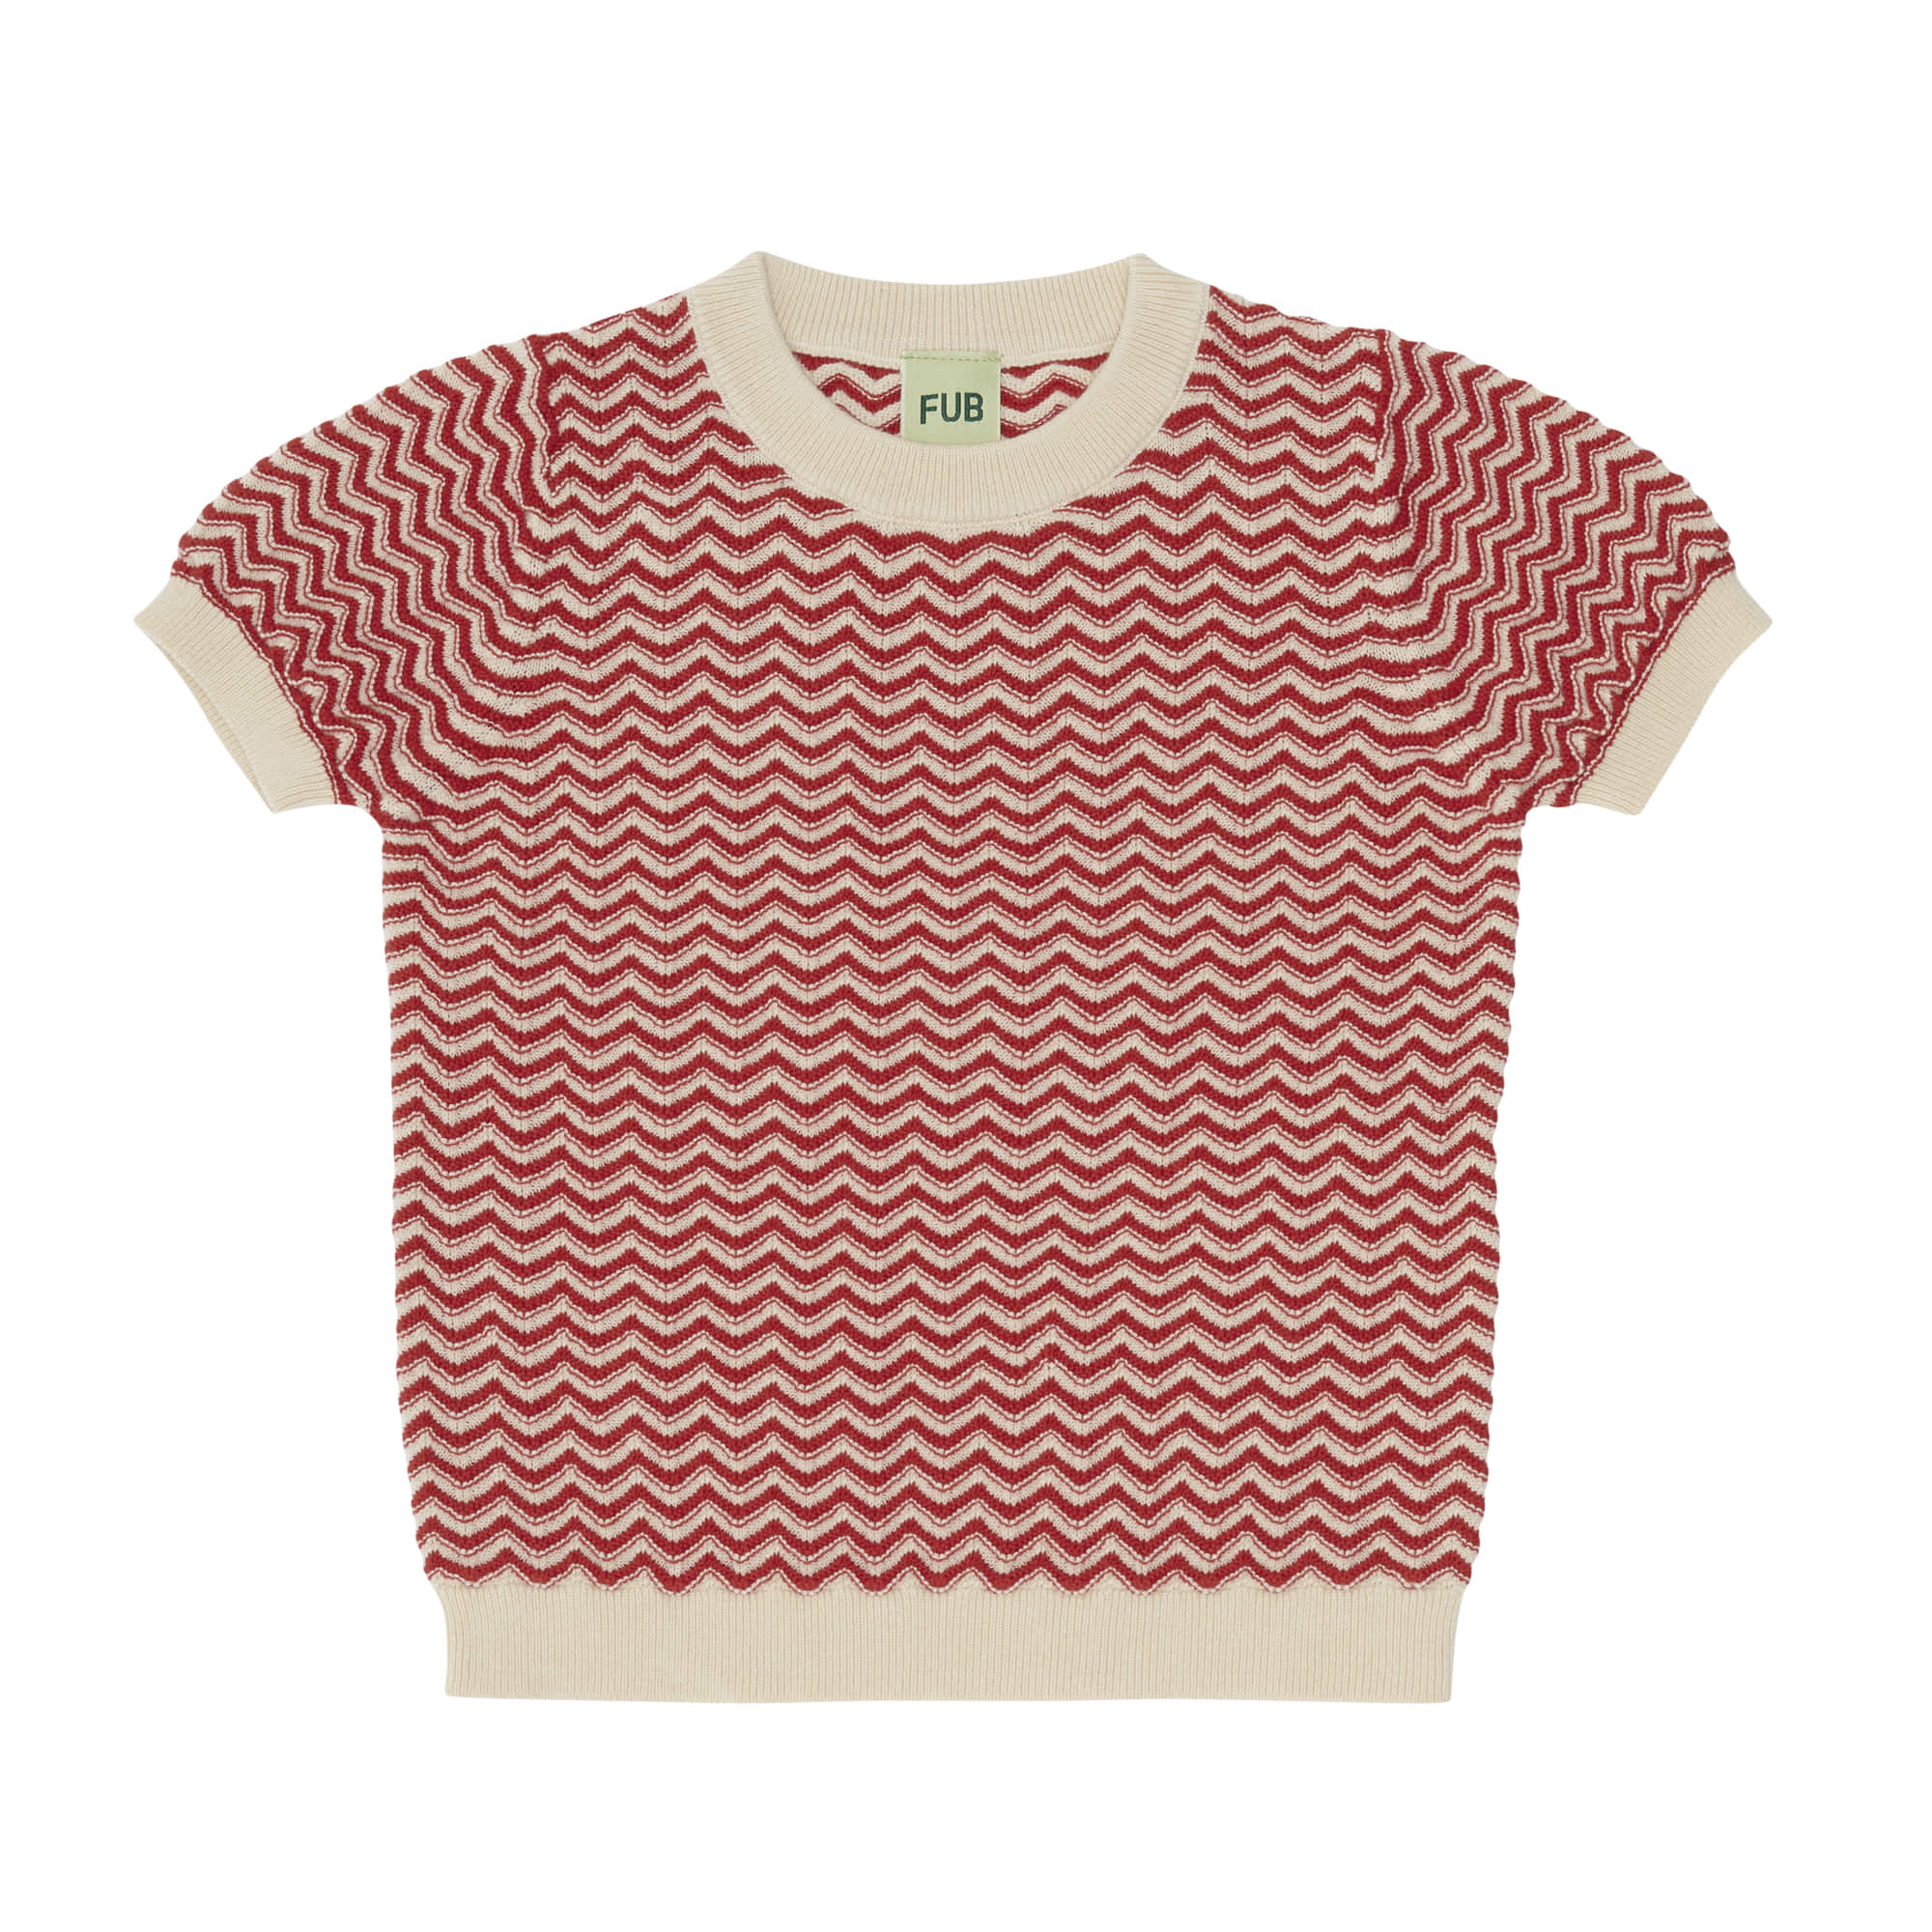 [FUB] ZigZag T-Shirt ecru/bright red